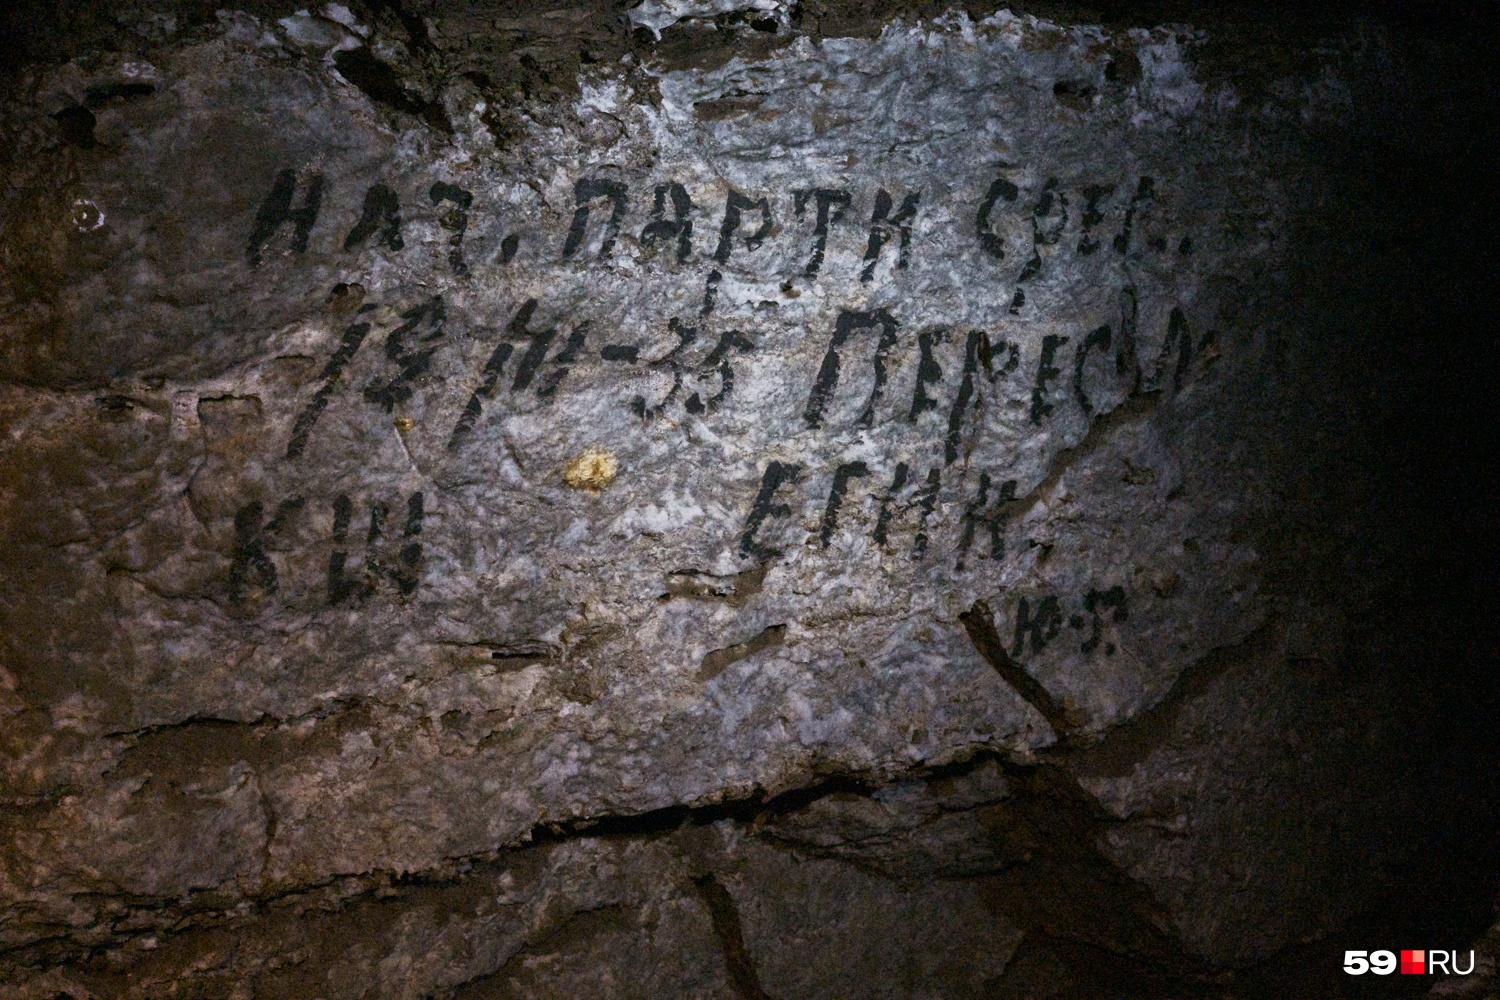 Эти надписи оставили ученые, которые открыли заповедную часть Кунгурской пещеры в 1935 году